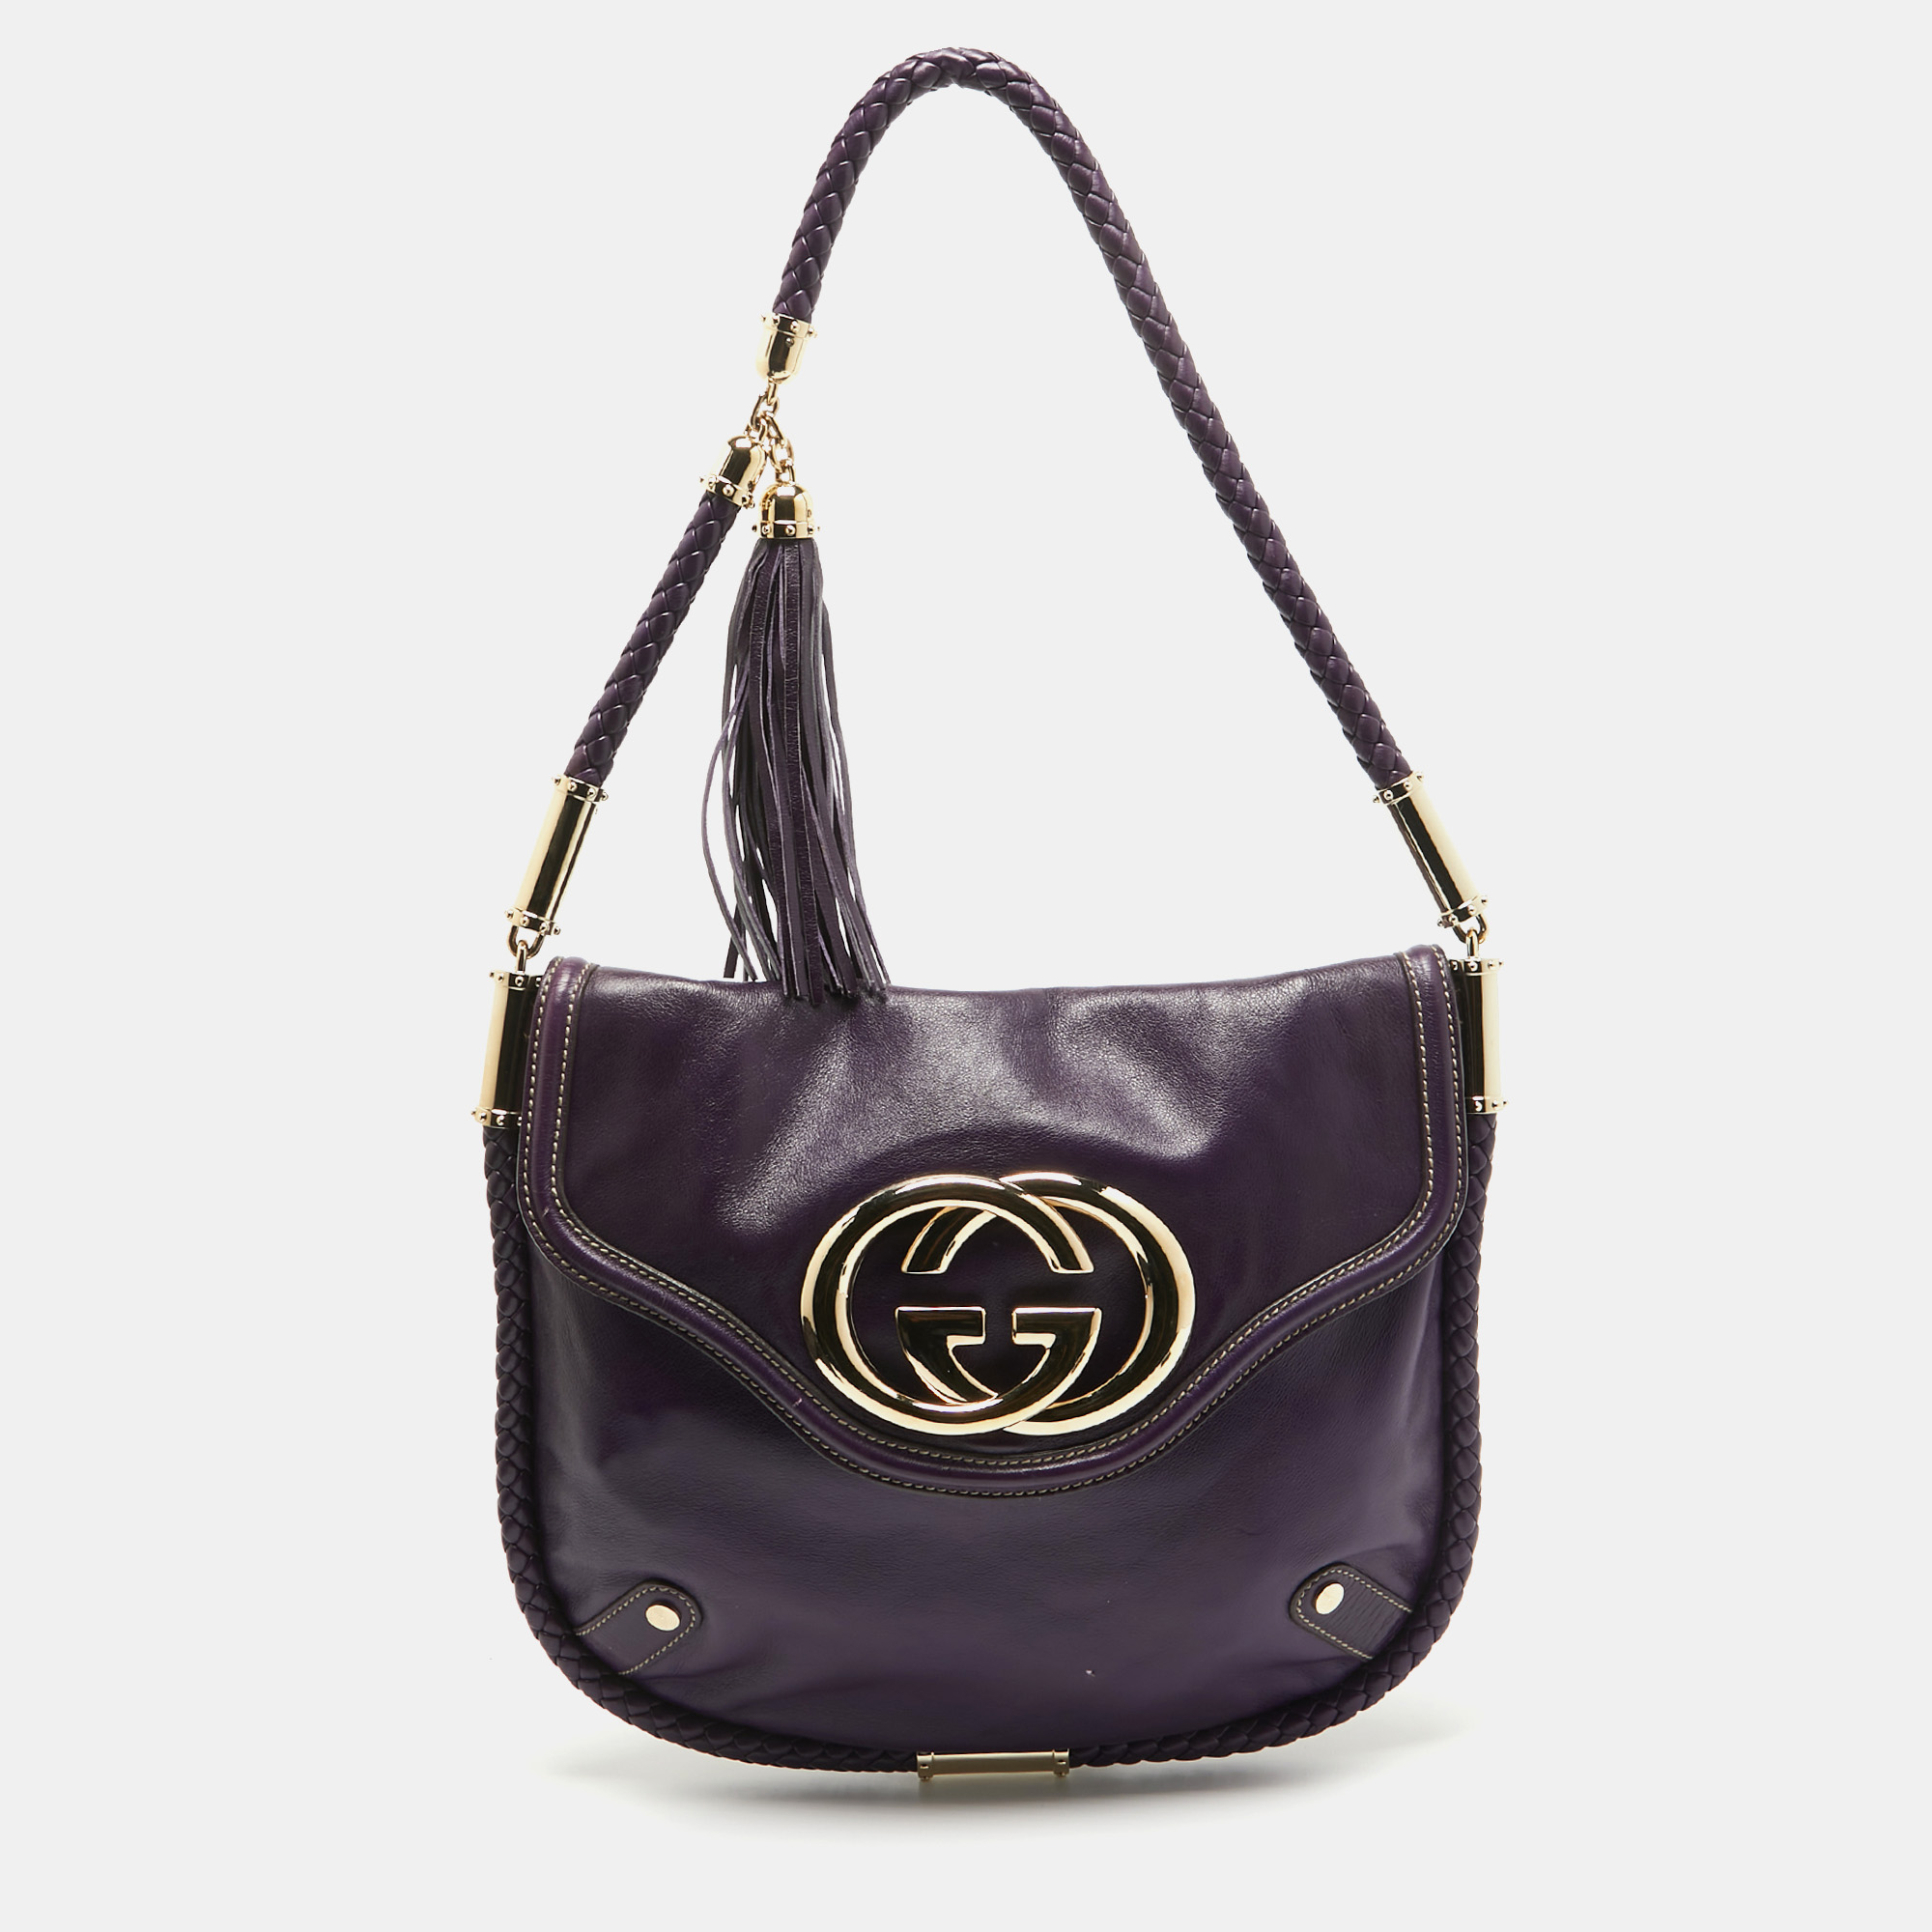 Gucci purple leather britt tassel flap bag